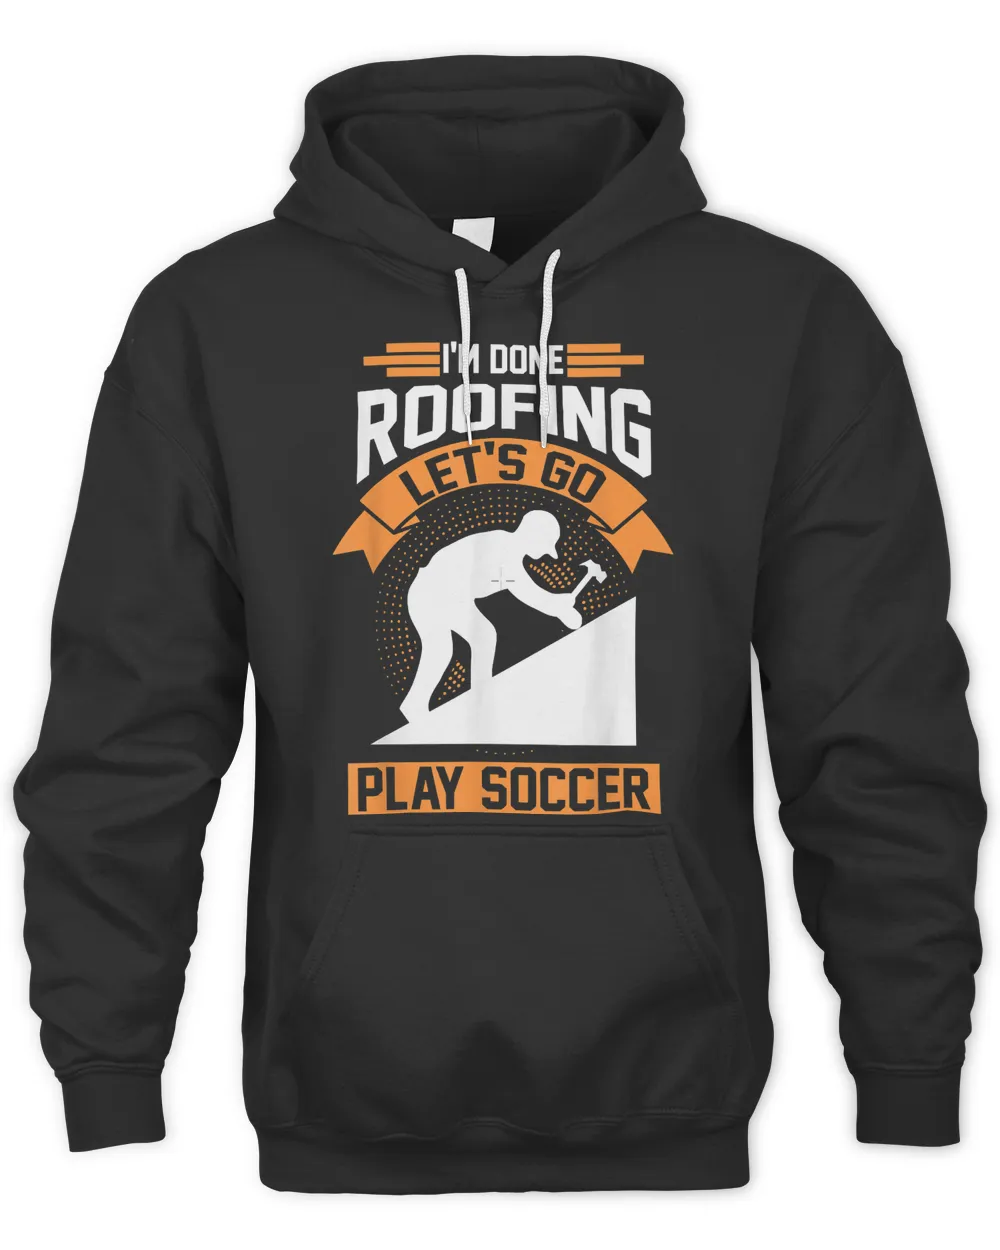 Roofer Soccer Gift T-Shirt